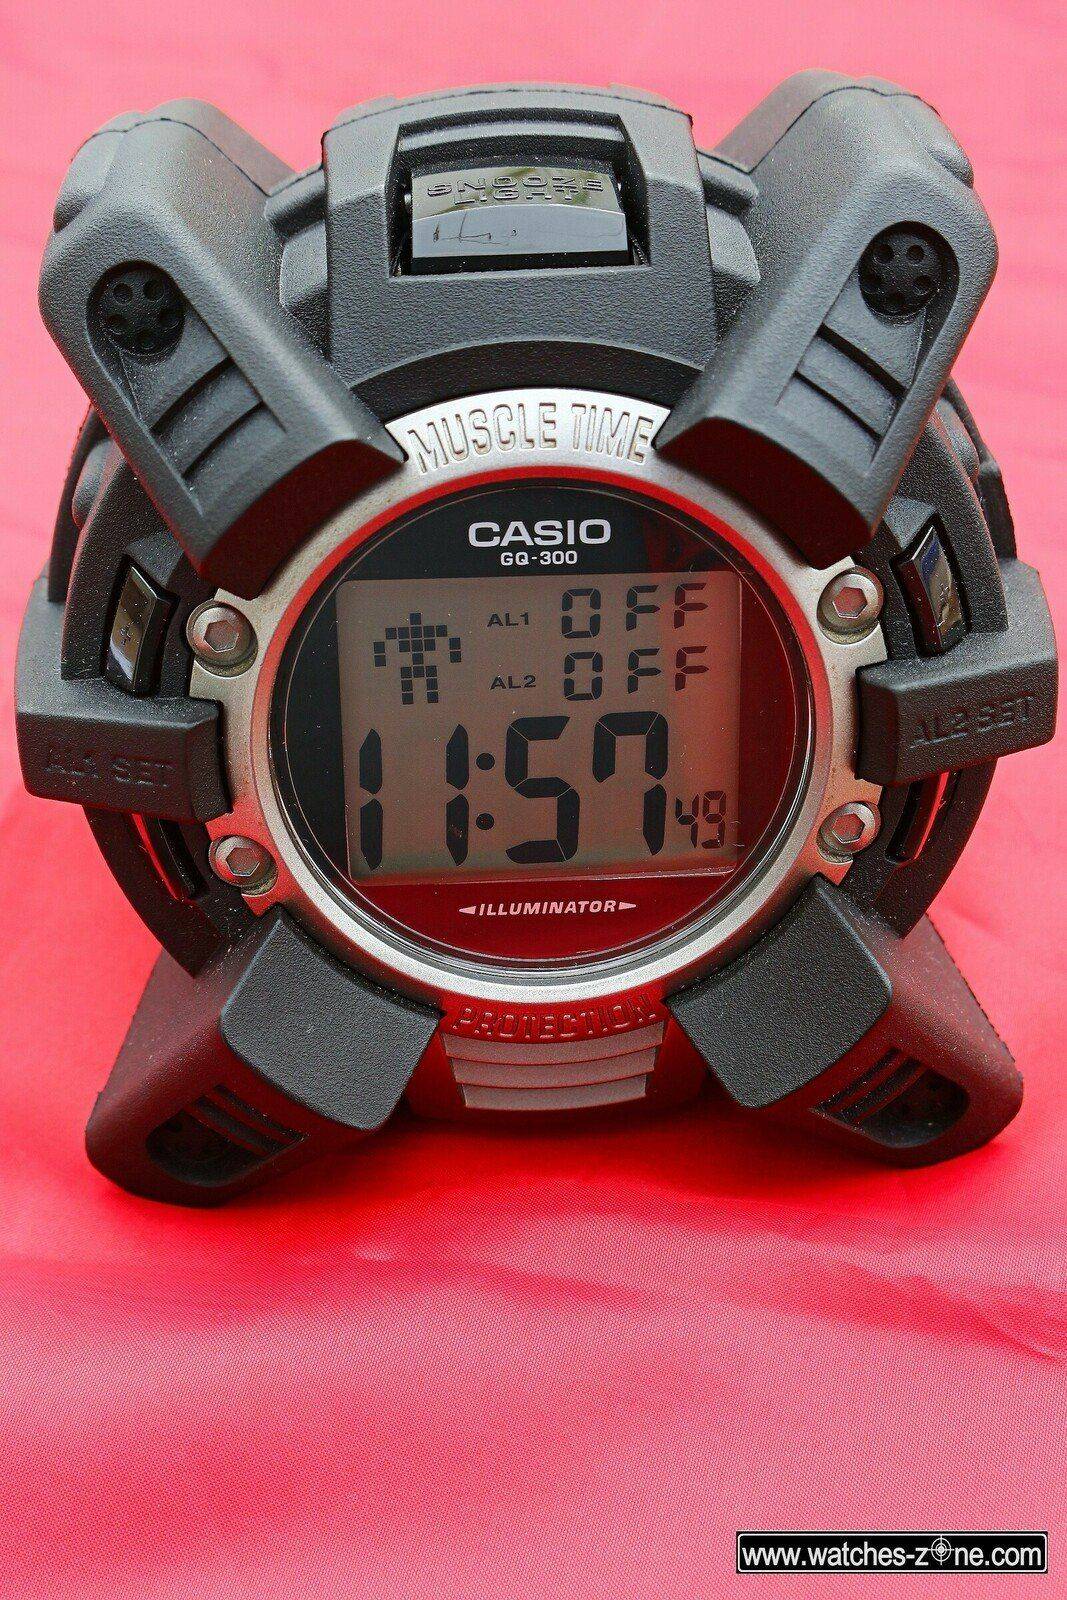 CASIO GQ-300 MUSCLE TIME: ¡¡¡ El Concepto !!! | Relojes Especiales, EL foro  de relojes